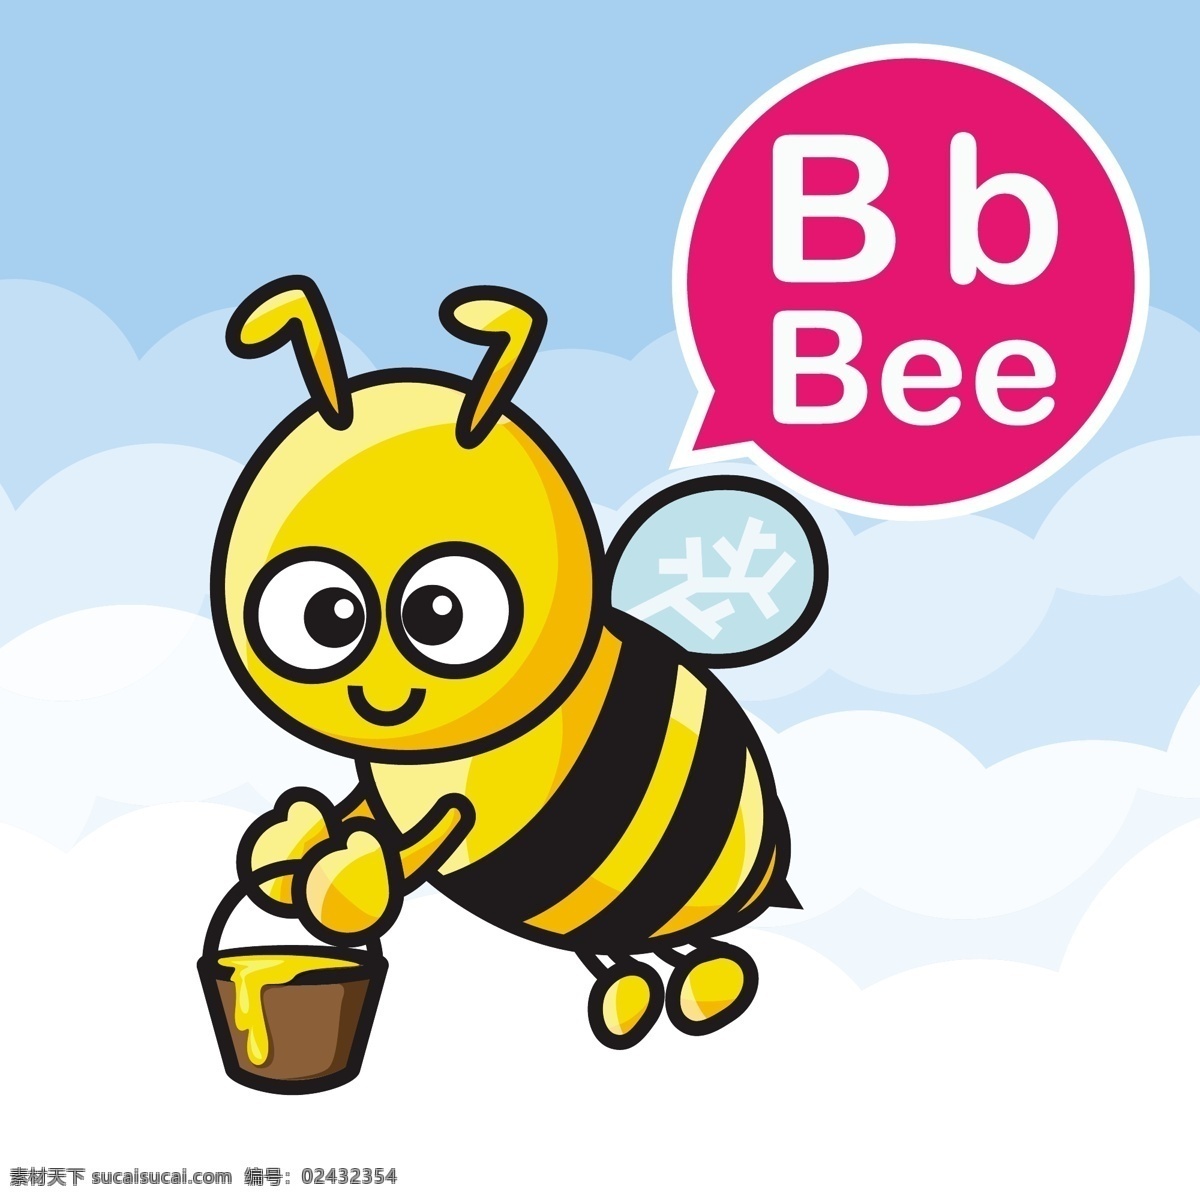 蜜蜂 卡通 小 动物 矢量 背景 采蜜 英语 幼儿园 教学 学习 卡牌 手绘 形象